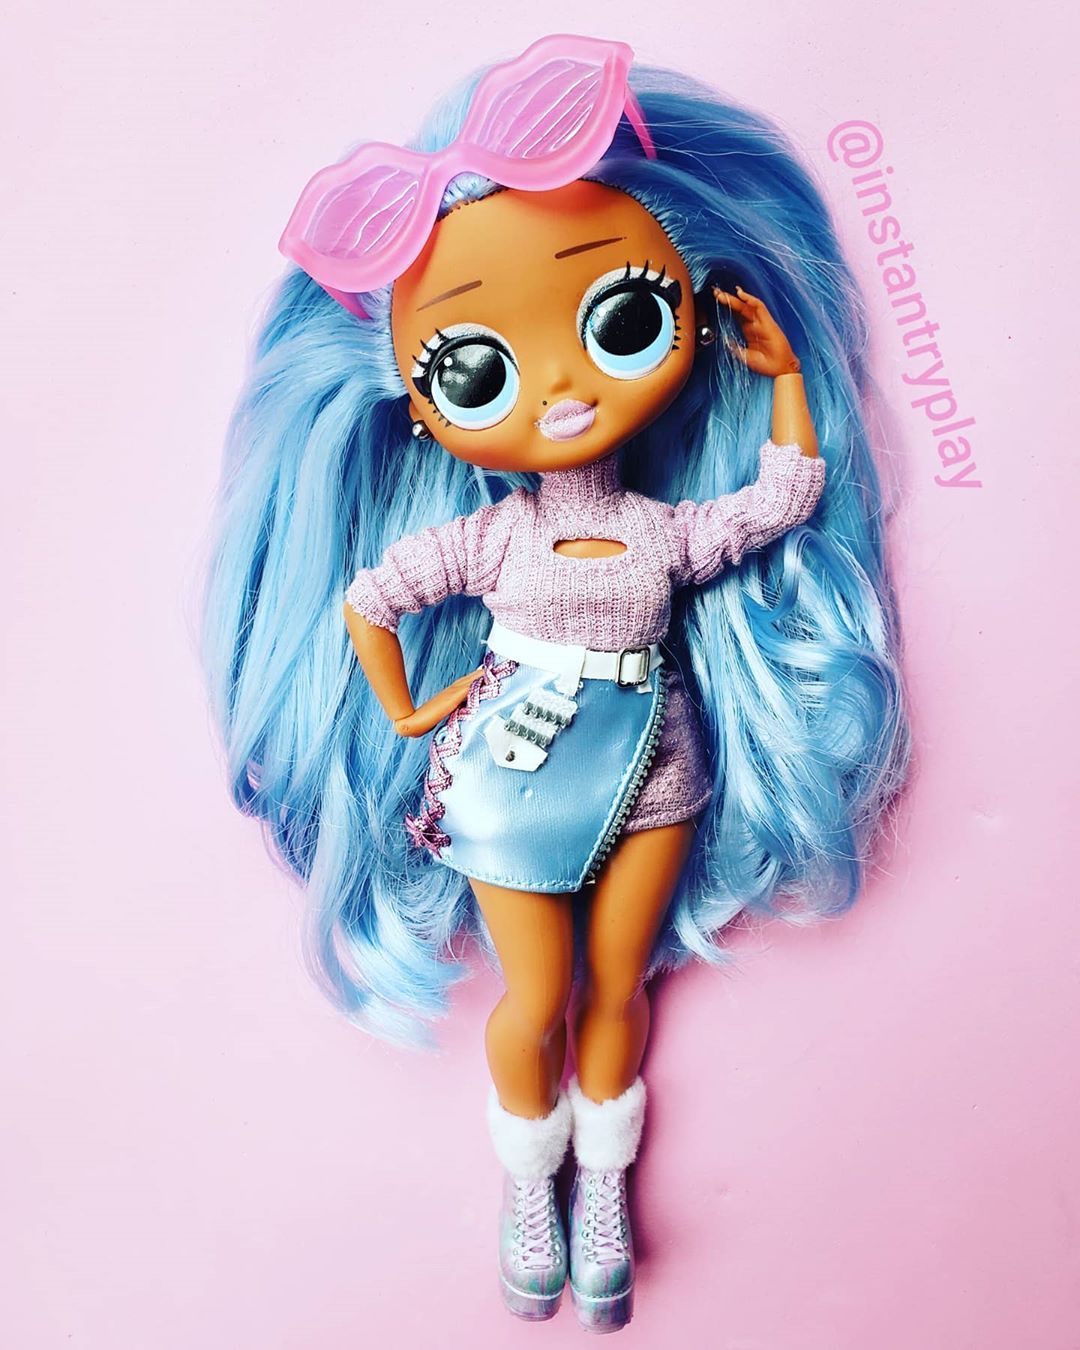 You glow girl! ❤ #snowlicious #toystagram #adultdollcollector #dollinfluencer #dollcollectors. Lol dolls, Monster high dolls, Cute dolls